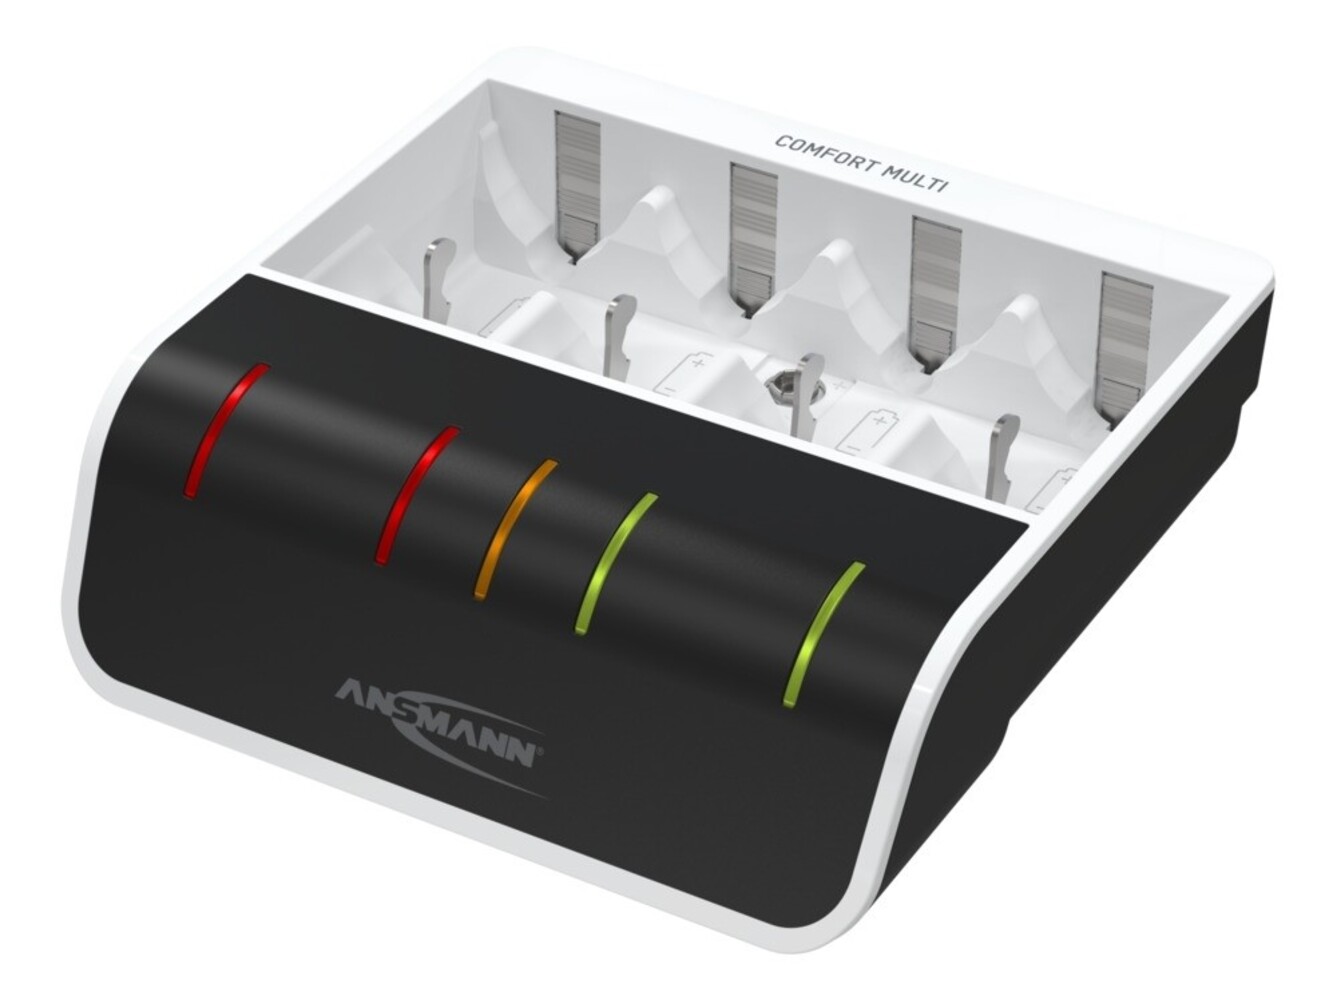 Hochwertiges Akku-Ladegerät von Ansmann, ideal zum Aufladen von NiMH und NiCD Batterien